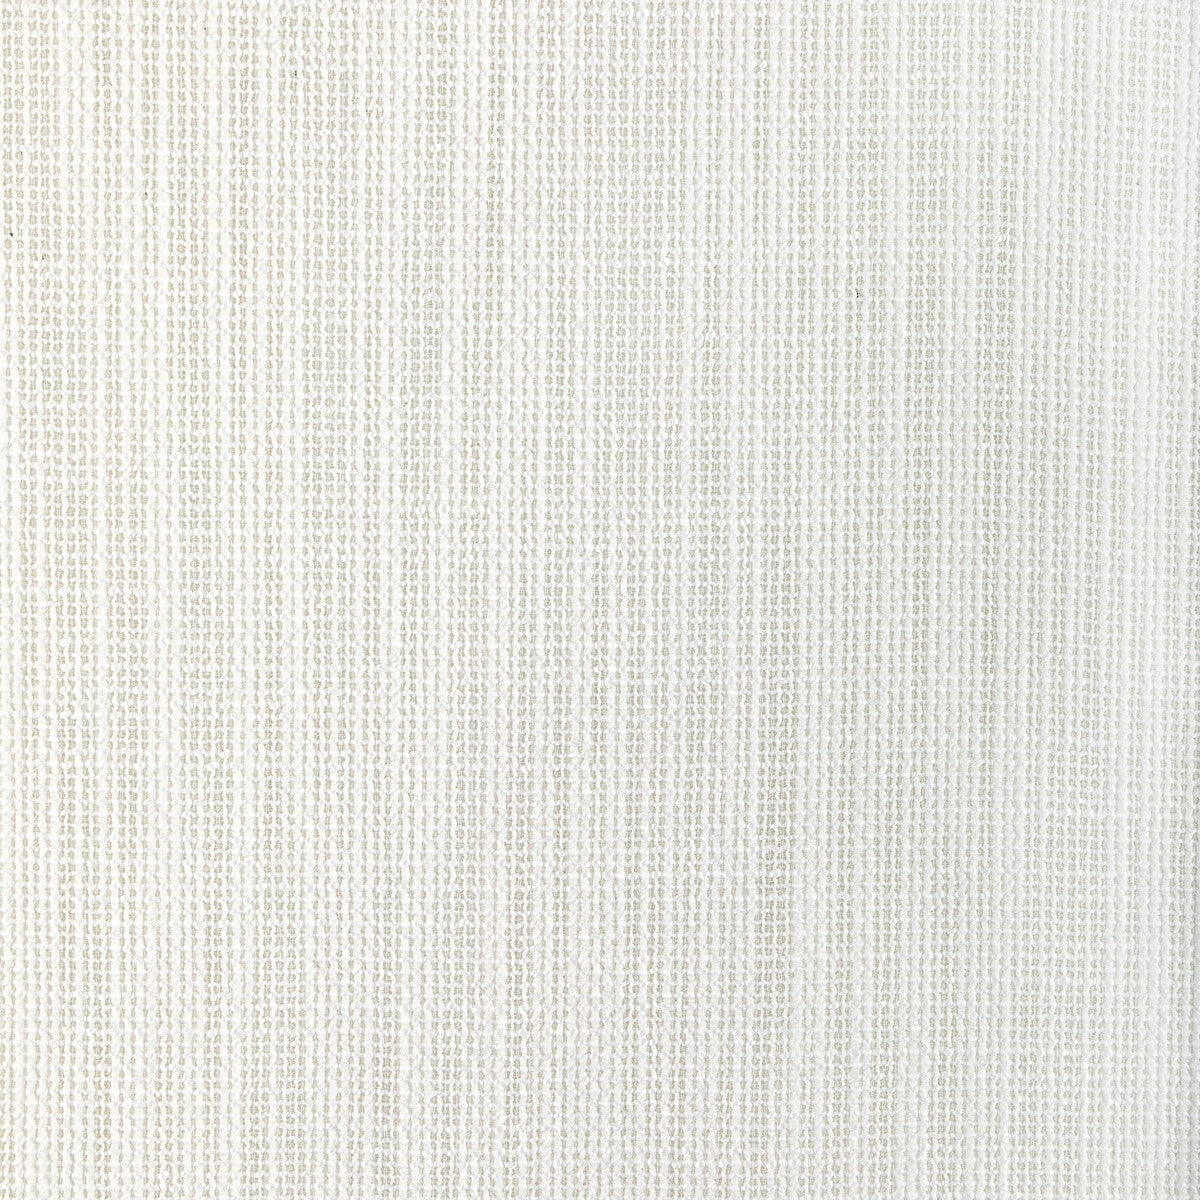 Kravet Design fabric in 4940-1 color - pattern 4940.1.0 - by Kravet Basics